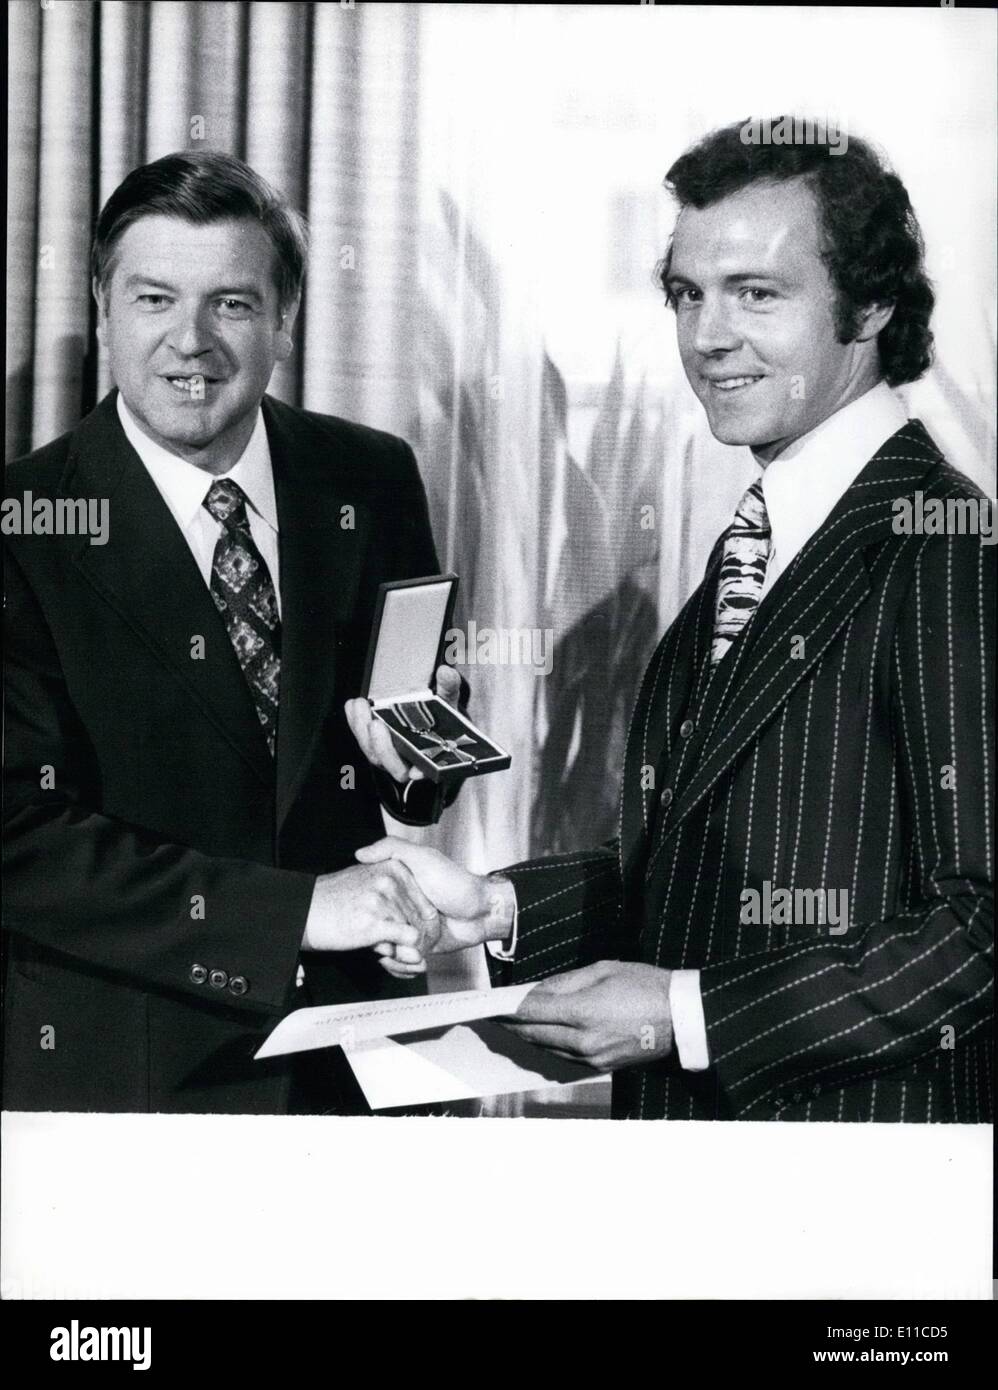 Sept. 09, 1976 - Fußball Spieler Franz Beckenbauer erhielt das Bundes  Verdienstkreuz.: Franz Beckenbauer (31), der berühmte bayerische  Fußballspieler, hat angesichts der Bundesrepublik Distinguished Service  Cross auf der Multifunktionsleiste auf 16 ...